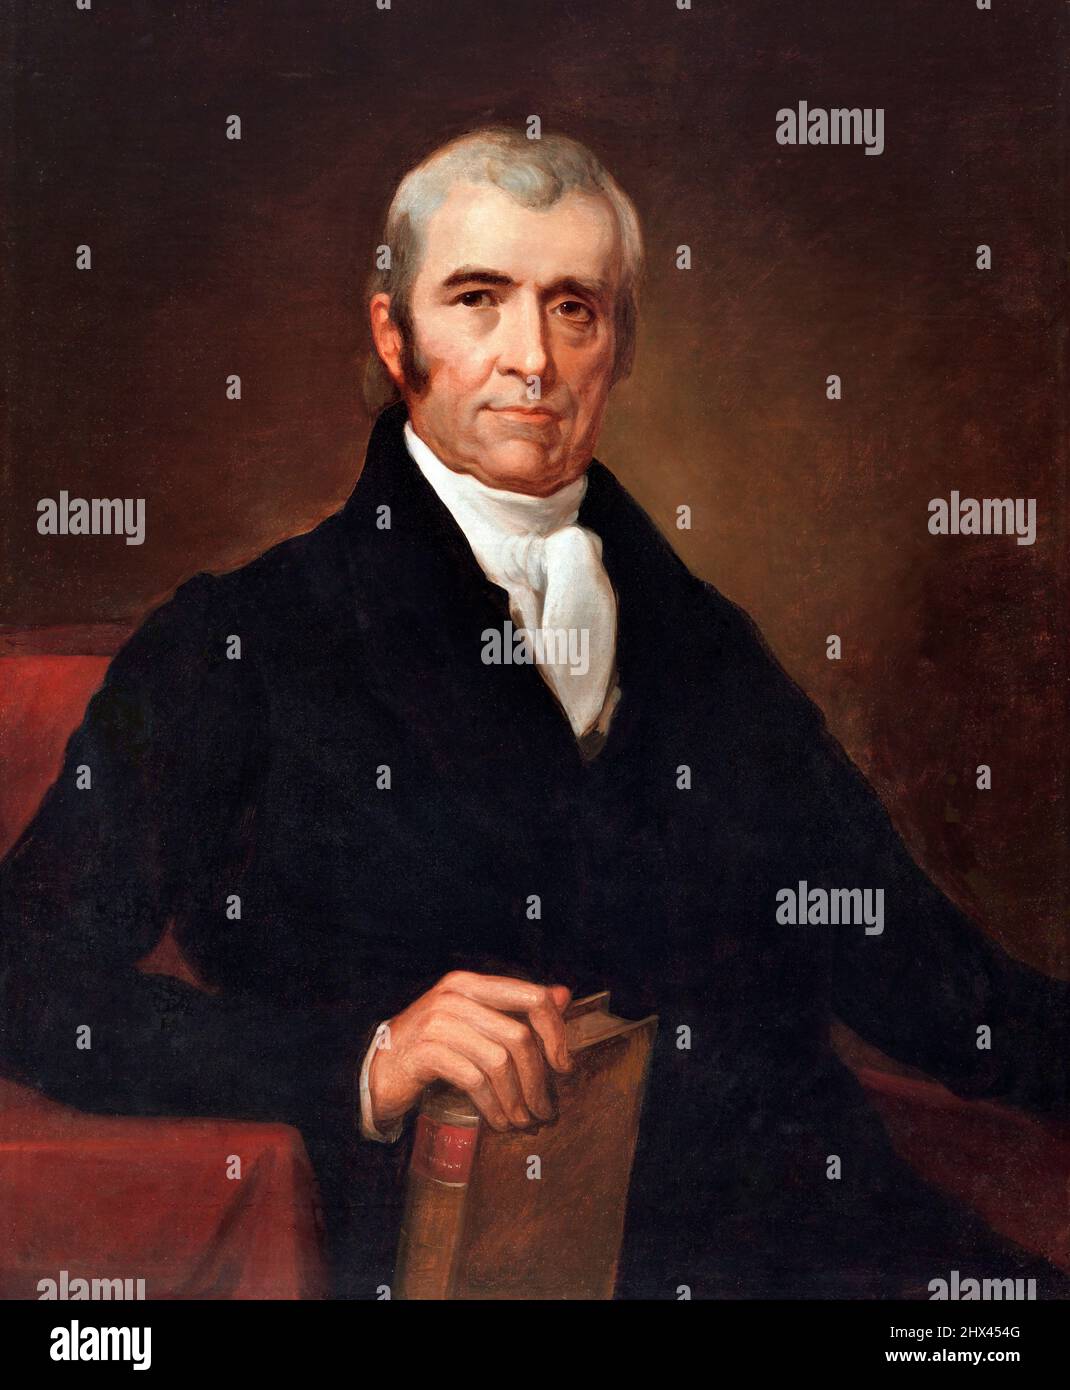 Vierter Oberrichter des Obersten Gerichtshofs der Vereinigten Staaten, John Marshall (1755-1835) von James Reid Lambdin, Öl auf Leinwand, nach 1831 Stockfoto